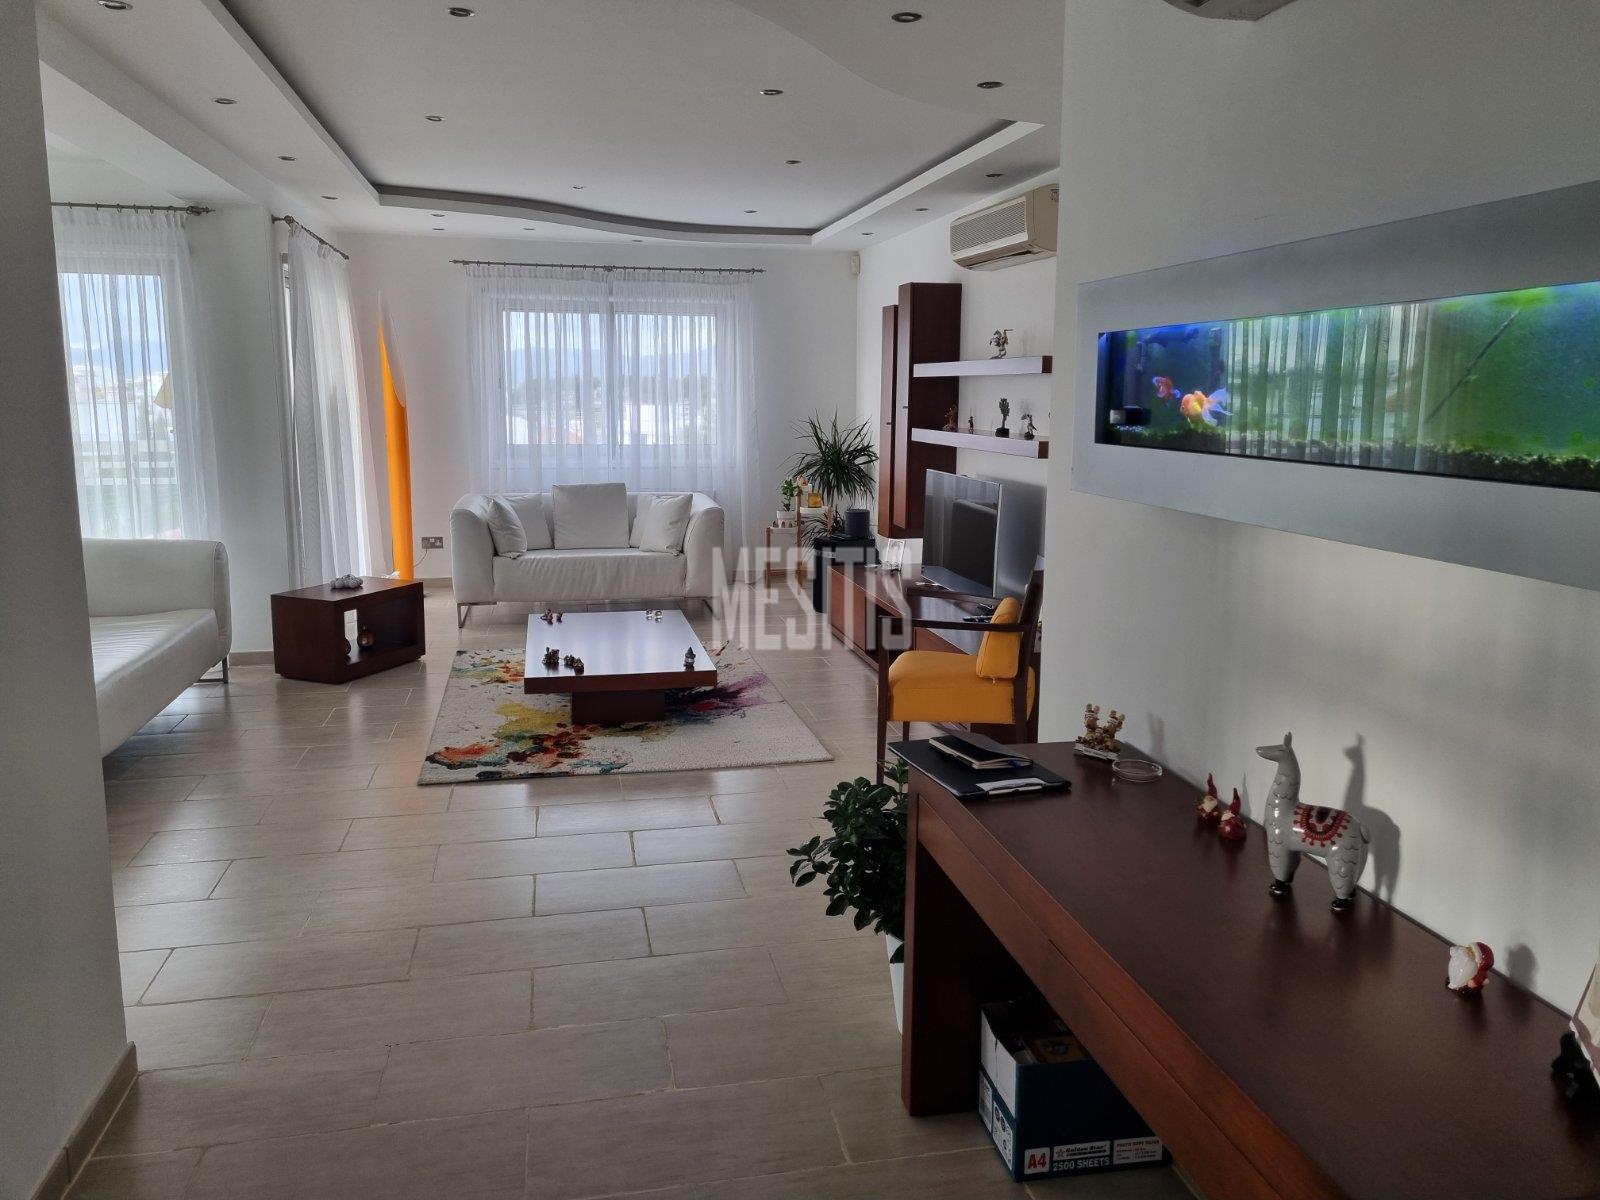 3 Βedroom Τop Floor Apartment For Sale In A Prime Location With Large Spaces And Incredible Aesthetics Αnd Views To All Of Nicosia #30861-0